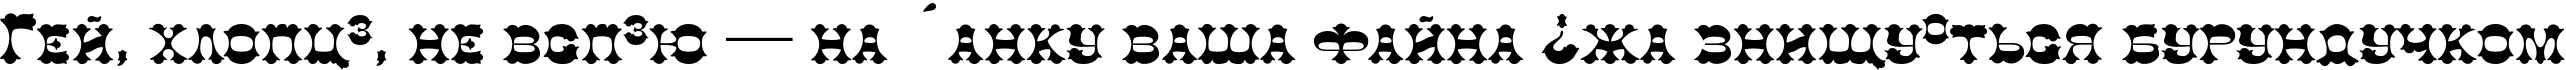 Пример написания шрифтом Colt TYGRA текста на украинском